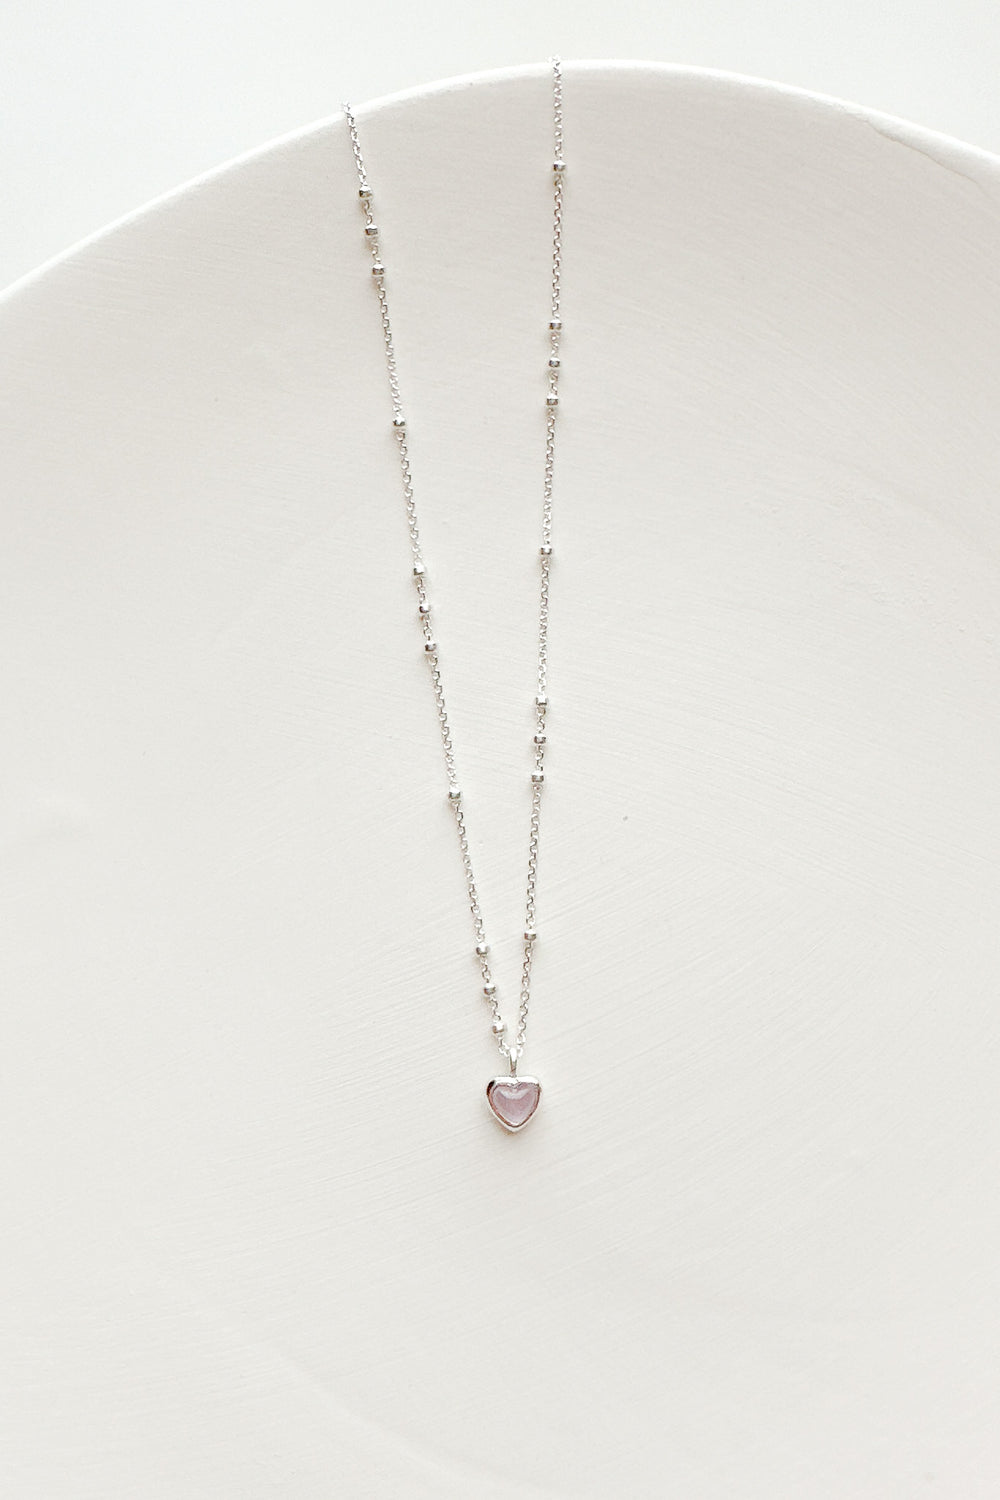 23434 Violette Gemstone Necklace